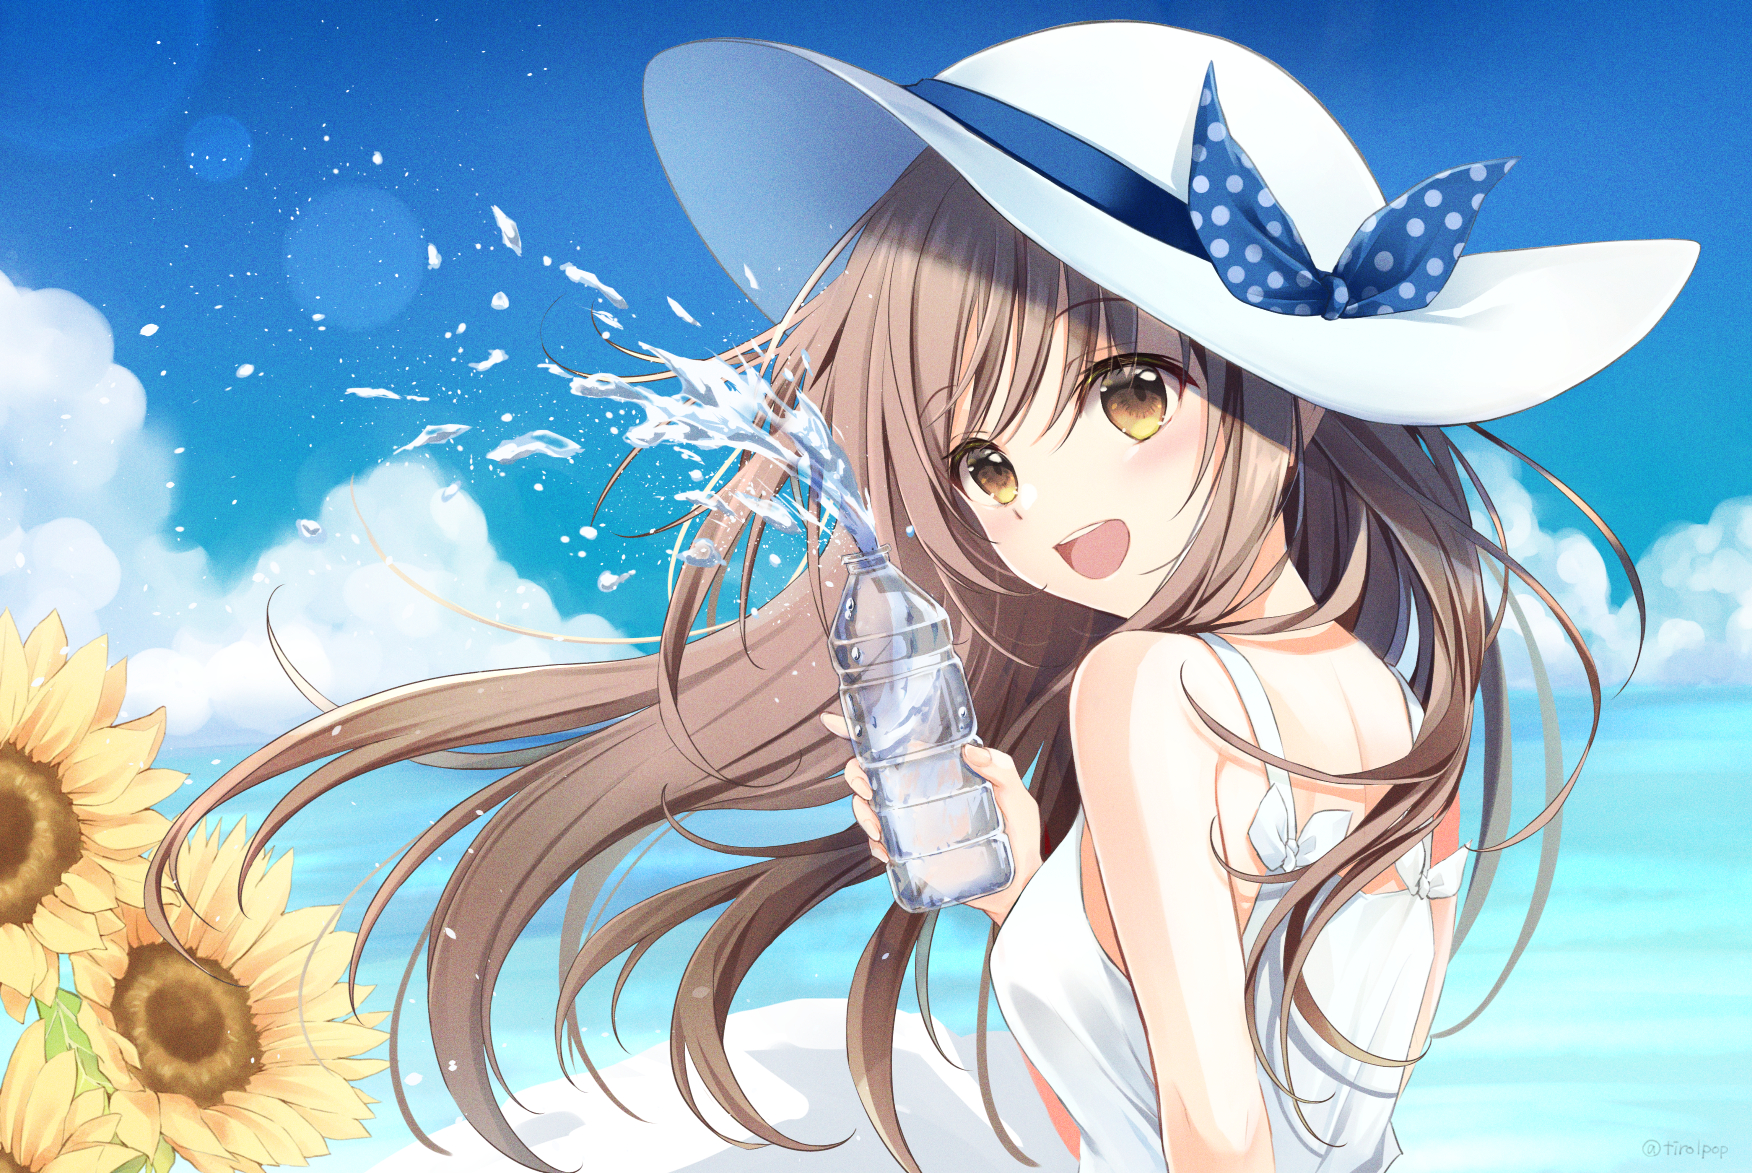 Anime Anime Girls Original Characters Solo Artwork Digital Art Fan Art Water Bottle Hat Dandelion 1752x1173